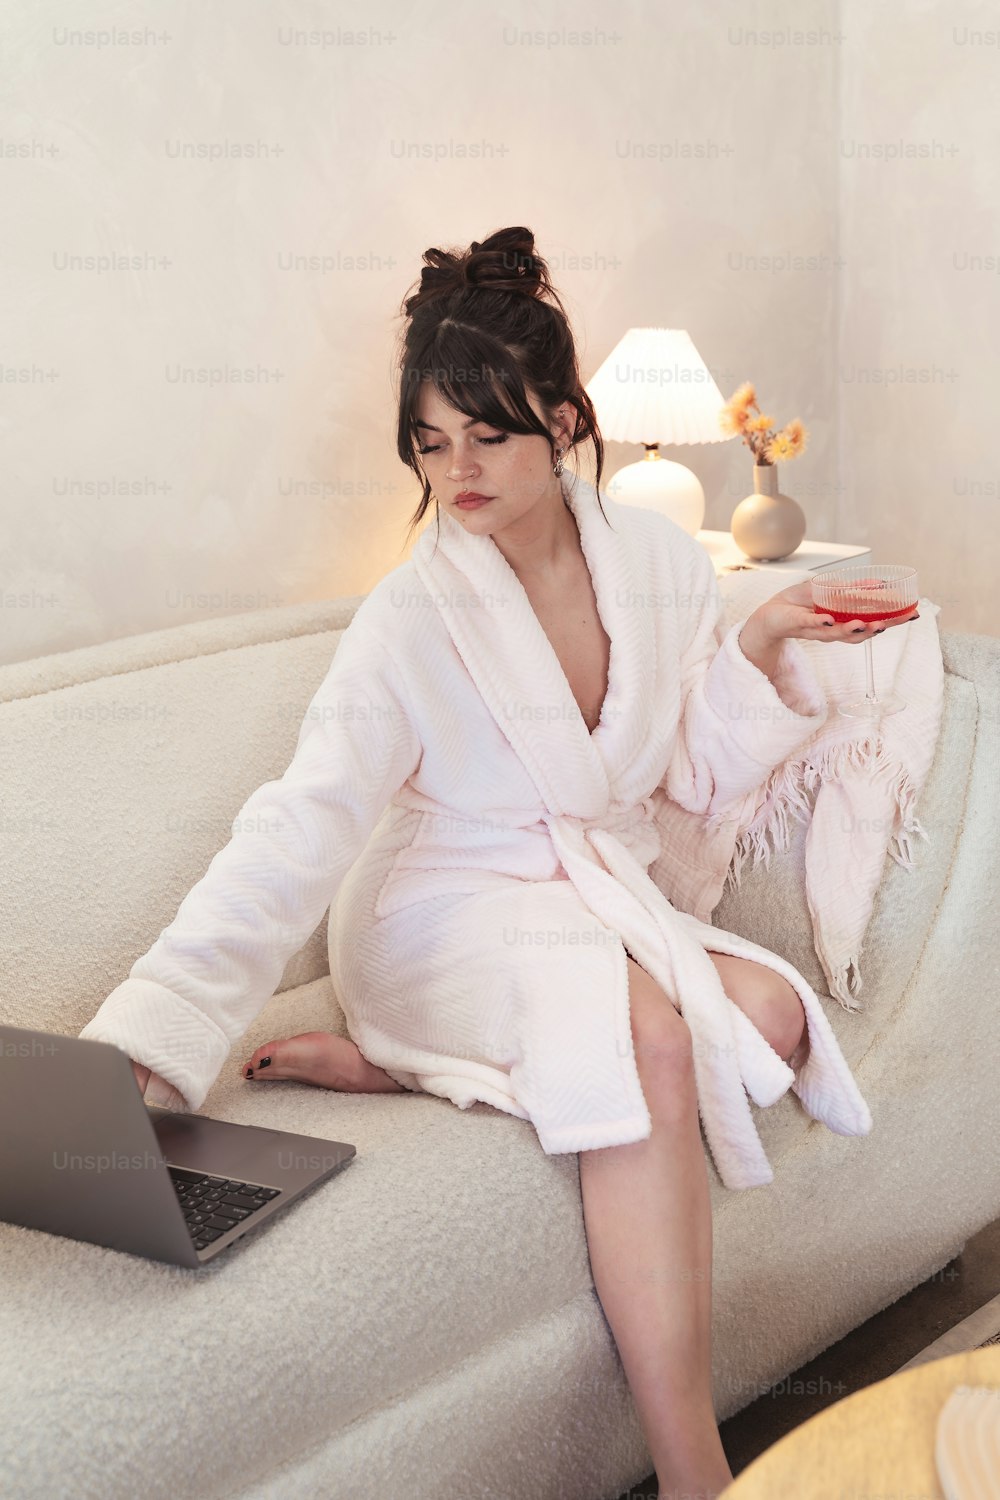 Eine Frau im Bademantel sitzt mit einem Laptop auf einer Couch